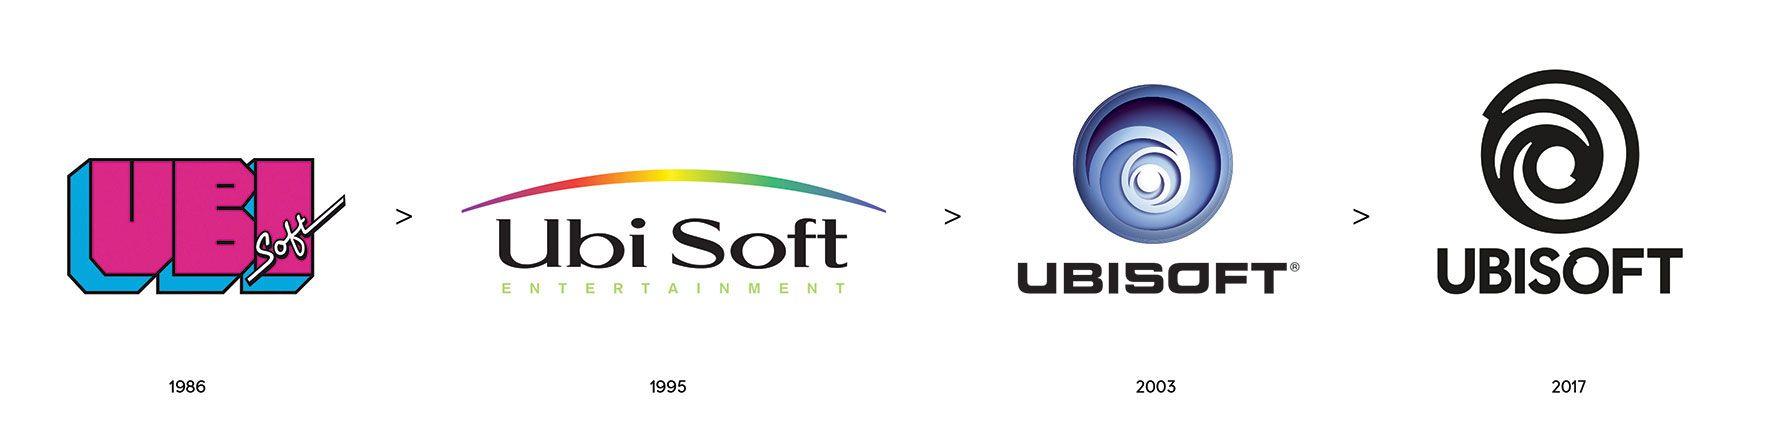 IGN Logo - Ubisoft Unveils New Logo